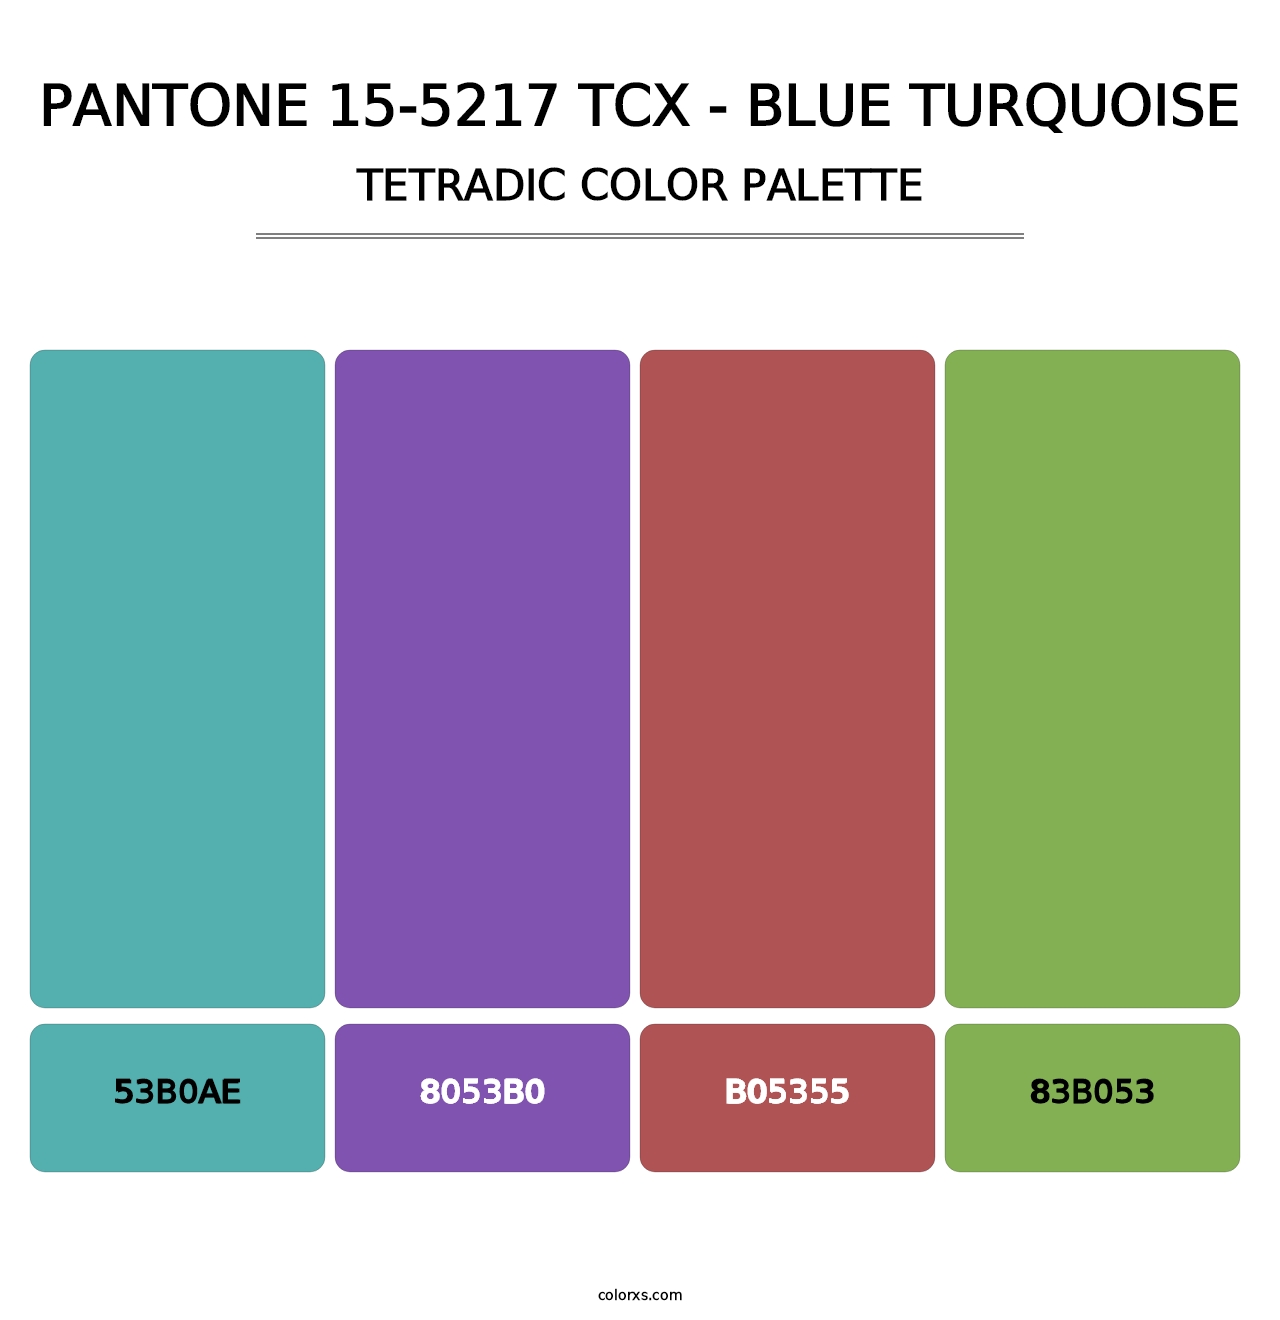 PANTONE 15-5217 TCX - Blue Turquoise - Tetradic Color Palette